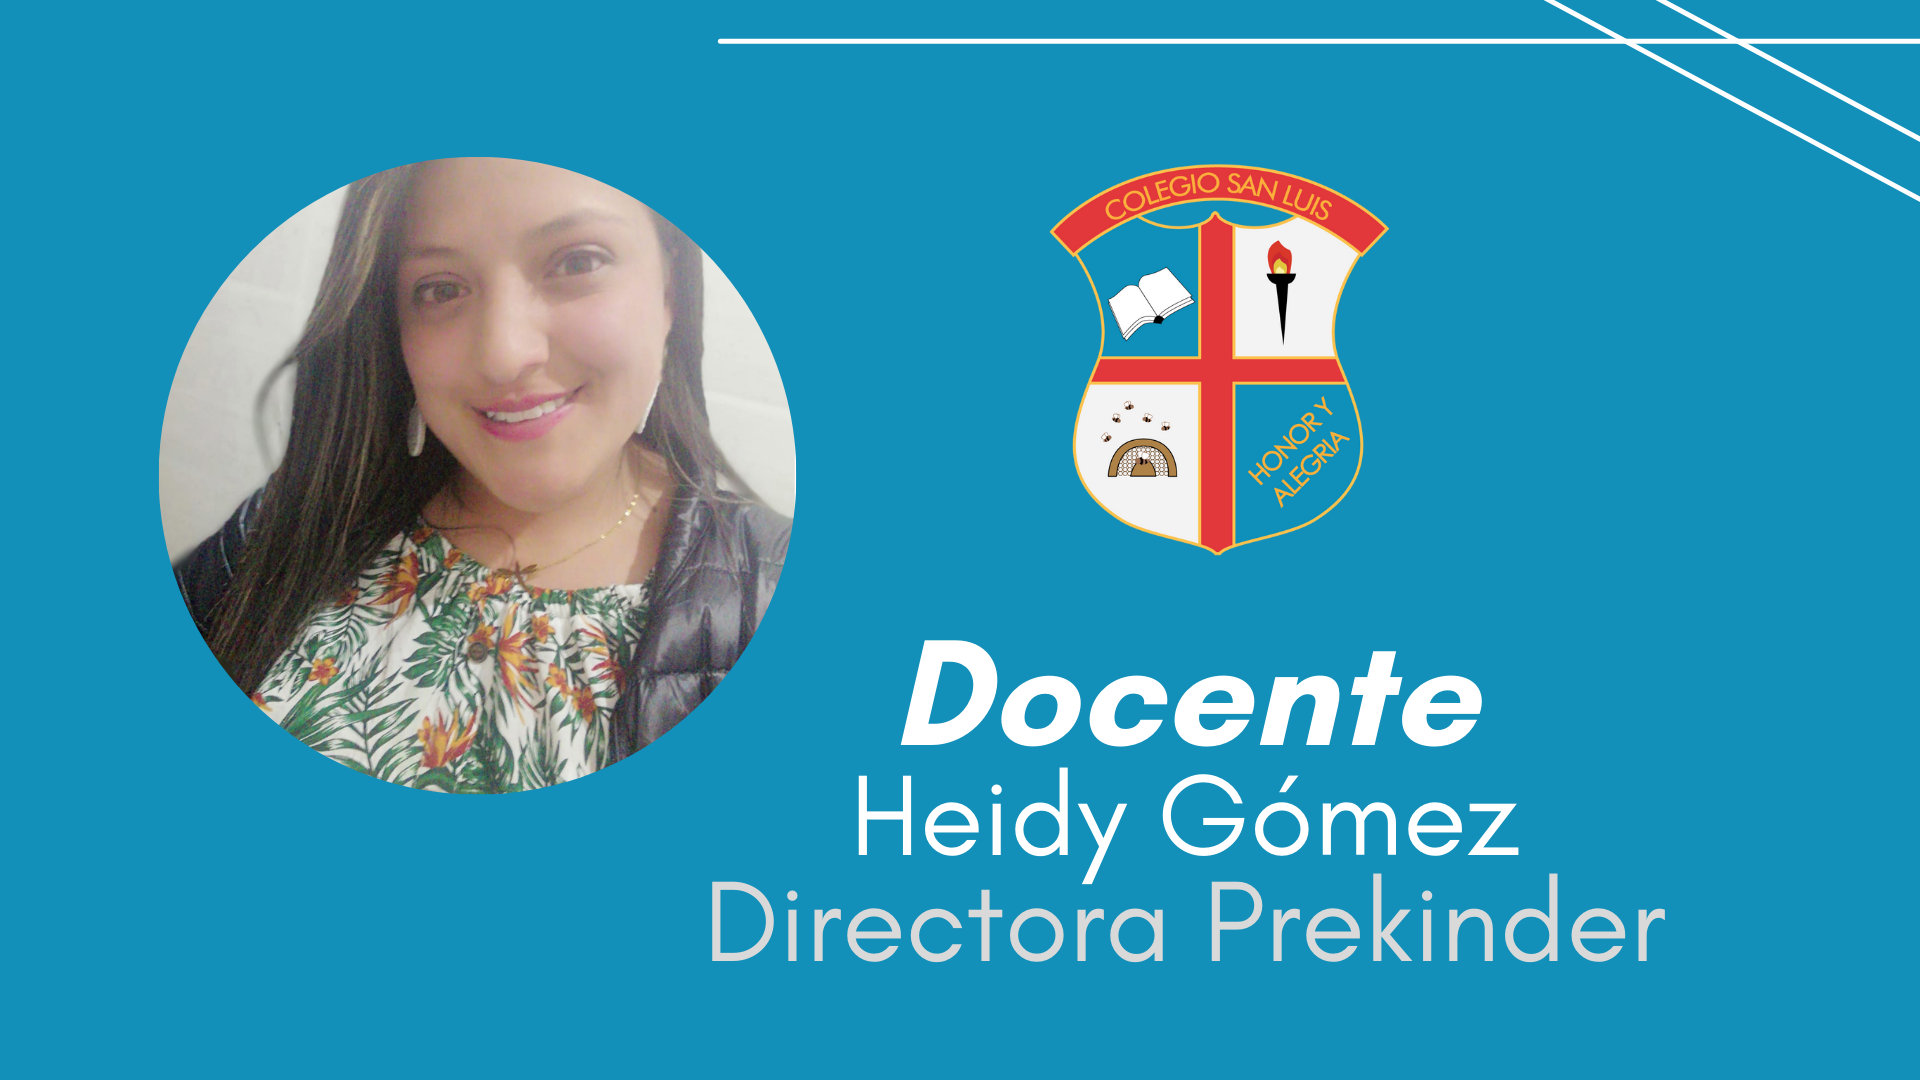 Heidy Gómez